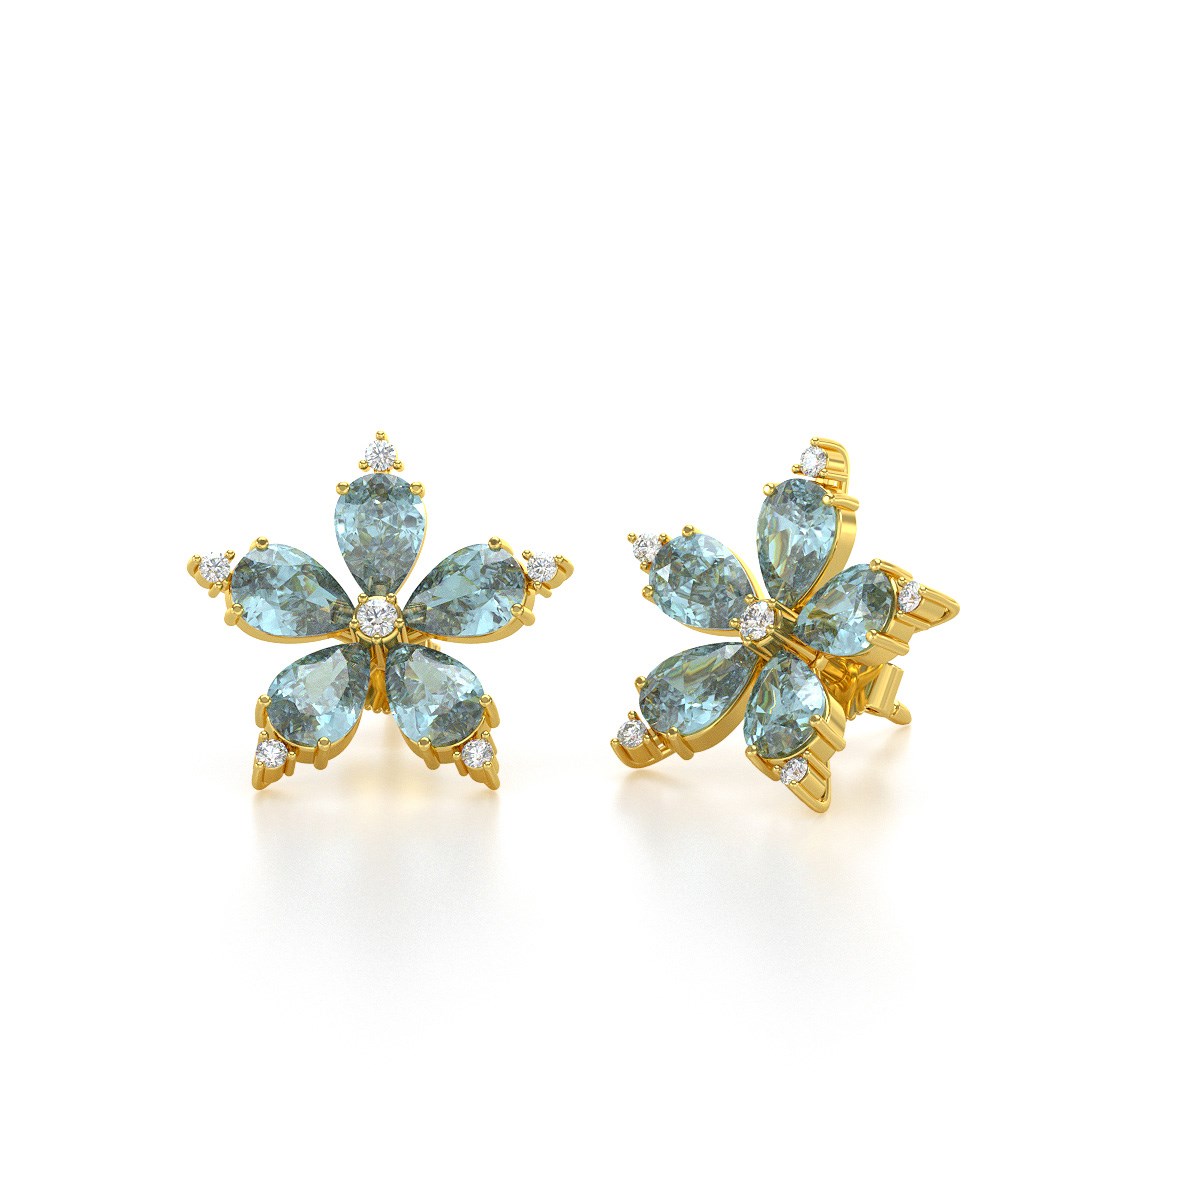 Boucles d'oreilles ADEN Or 585 Jaune Fleur Aigue-Marine et Diamants 4.52grs - vue 3